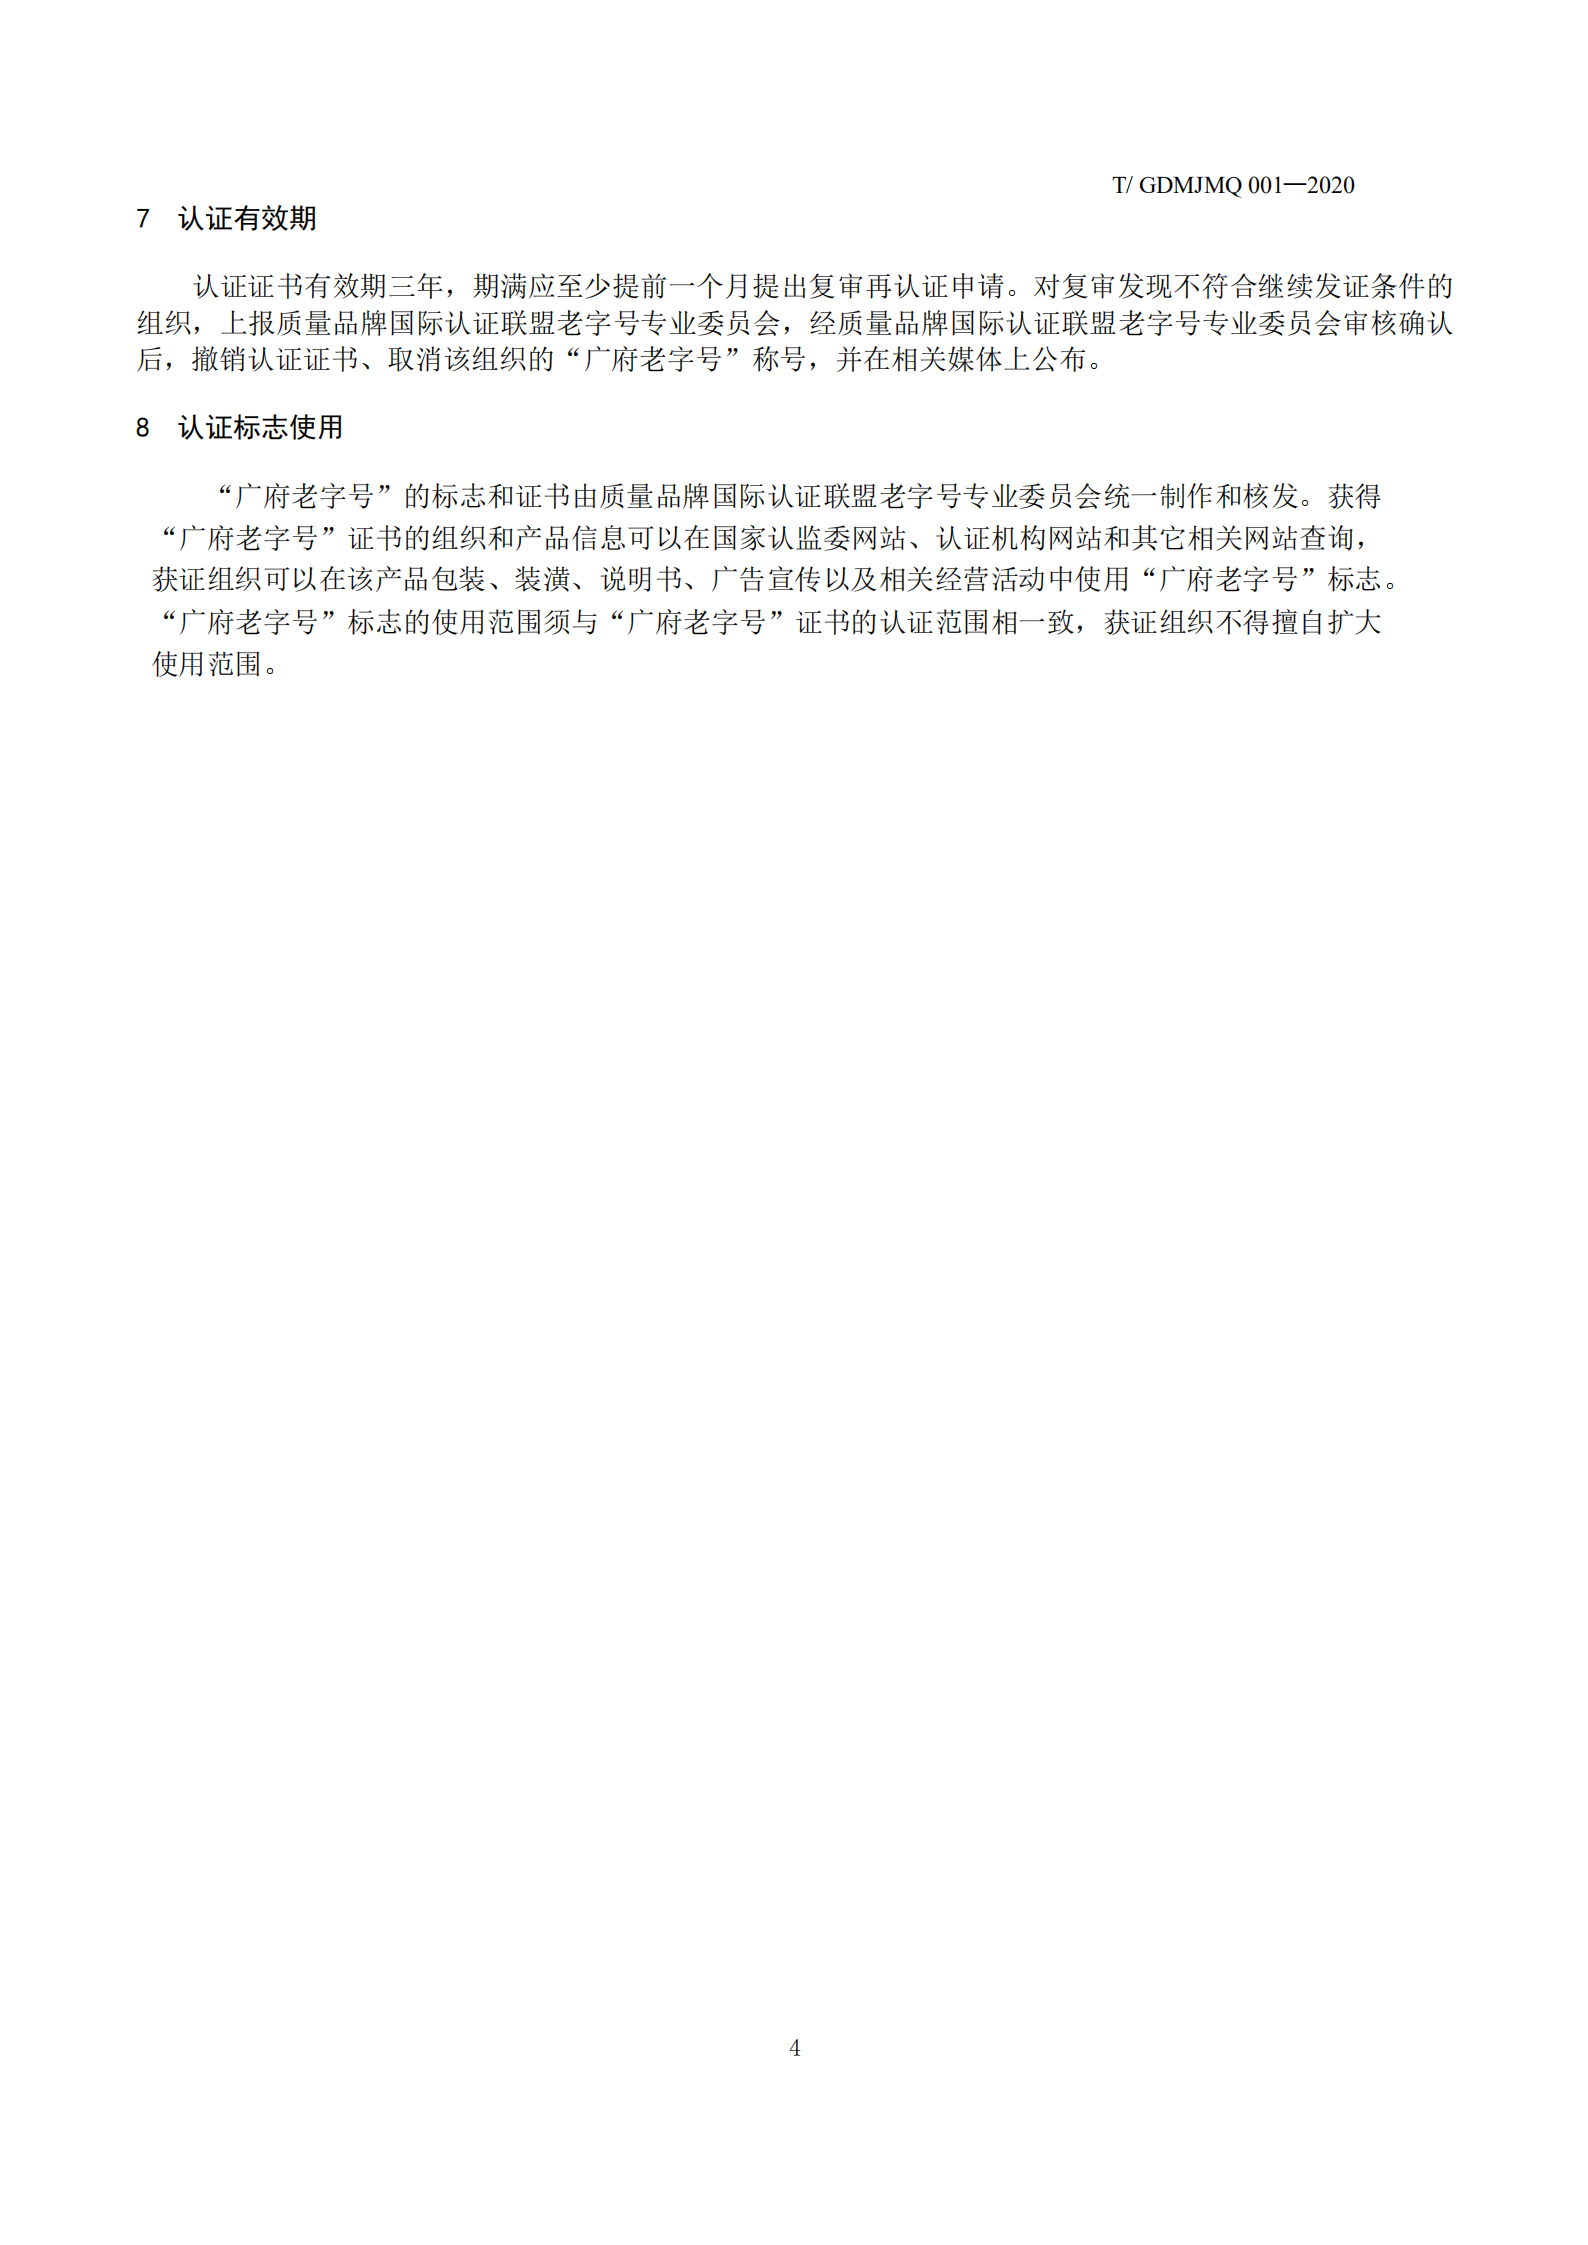 广府老字号认证技术规范(1)_05.png